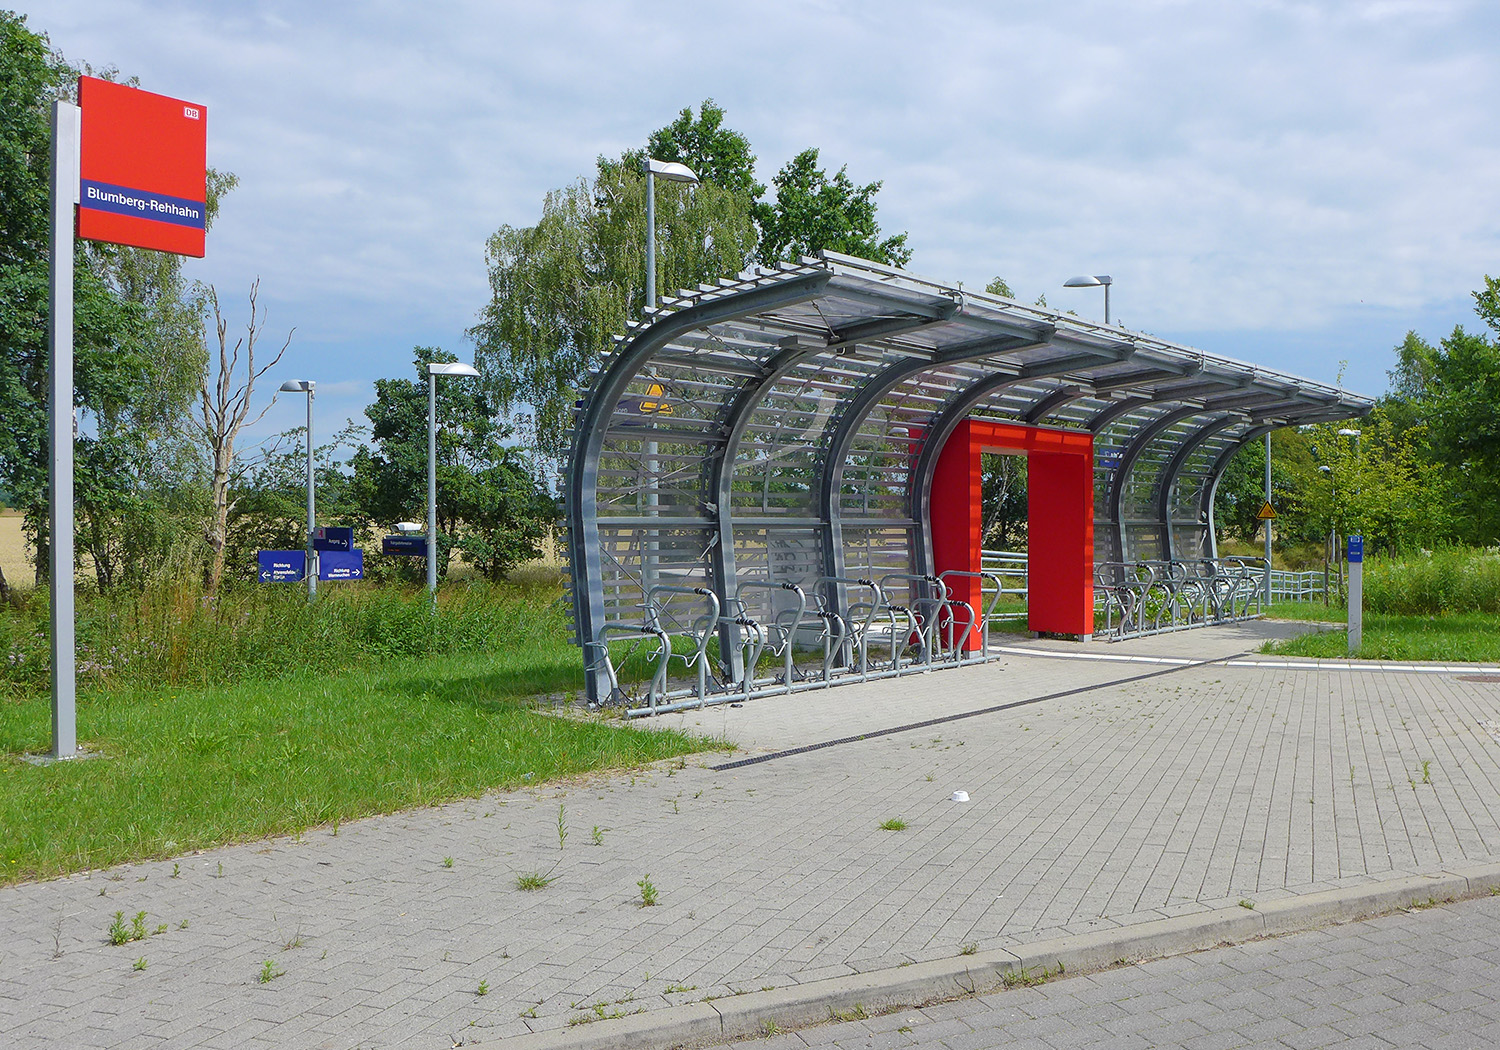 Der Zugang zum neuen Haltepunkt Blumberg-Rehhahn schafft eine Sichtverbindung zwischen Straße und Bahnsteig und bietet gleichzeitig Platz für Fahrräder